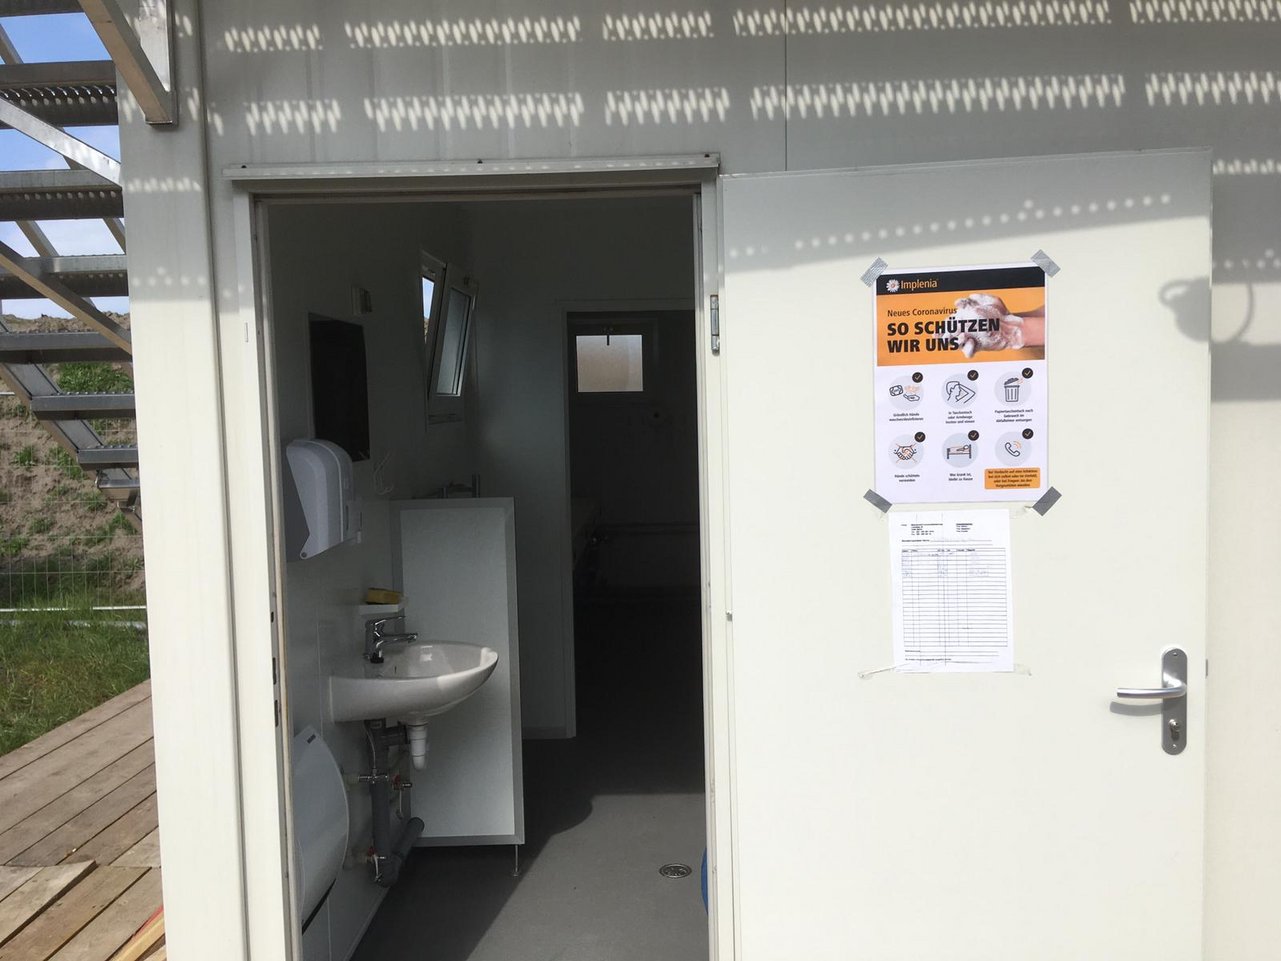 "Information und Hygiene: Auch bei unseren Sanitäranlagen hängen die Infoplakate zum Schutz gegen das neue Coronavirus. "